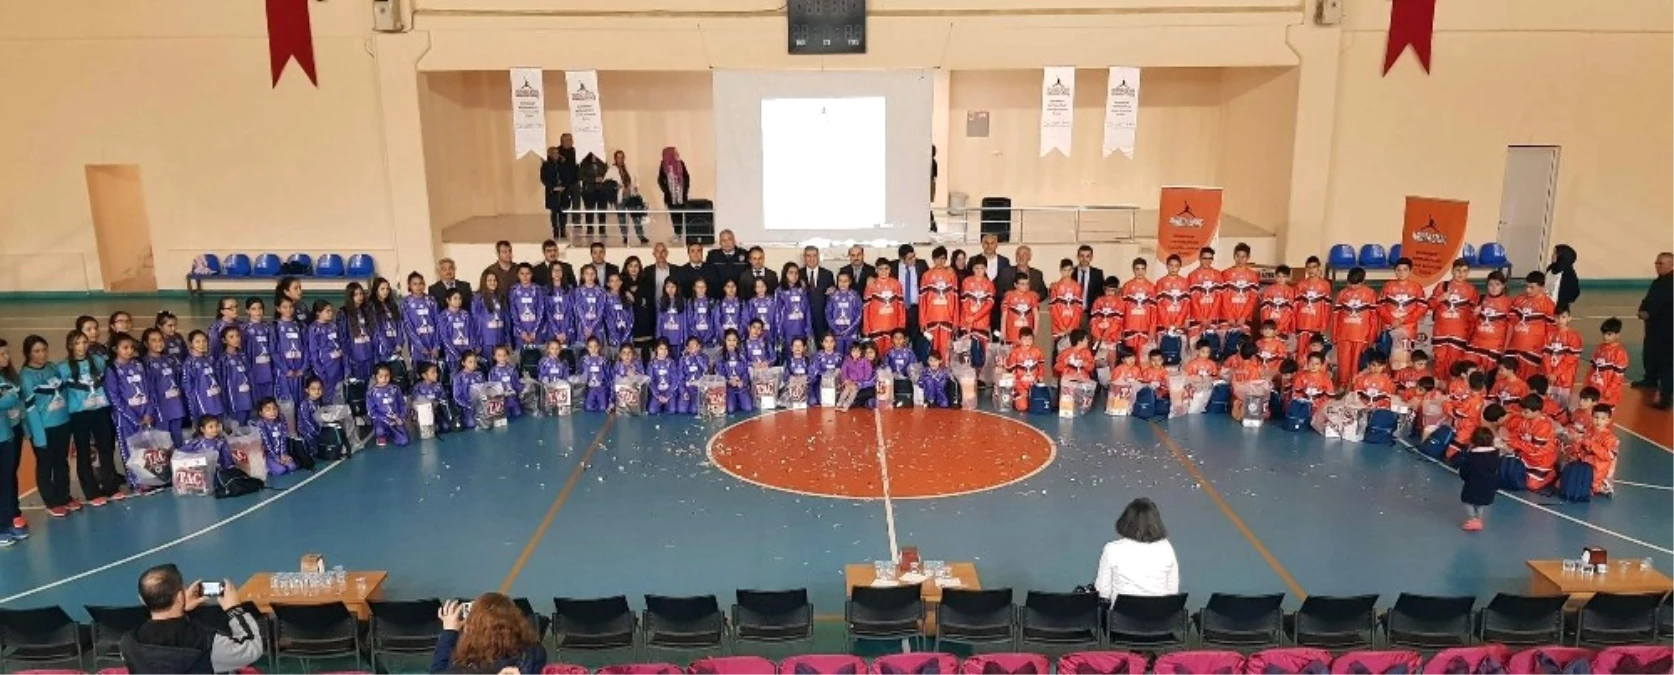 Hayata Smaç\' Projesi 375 Öğrenciyi İlk Kez Sporla Tanıştırdı